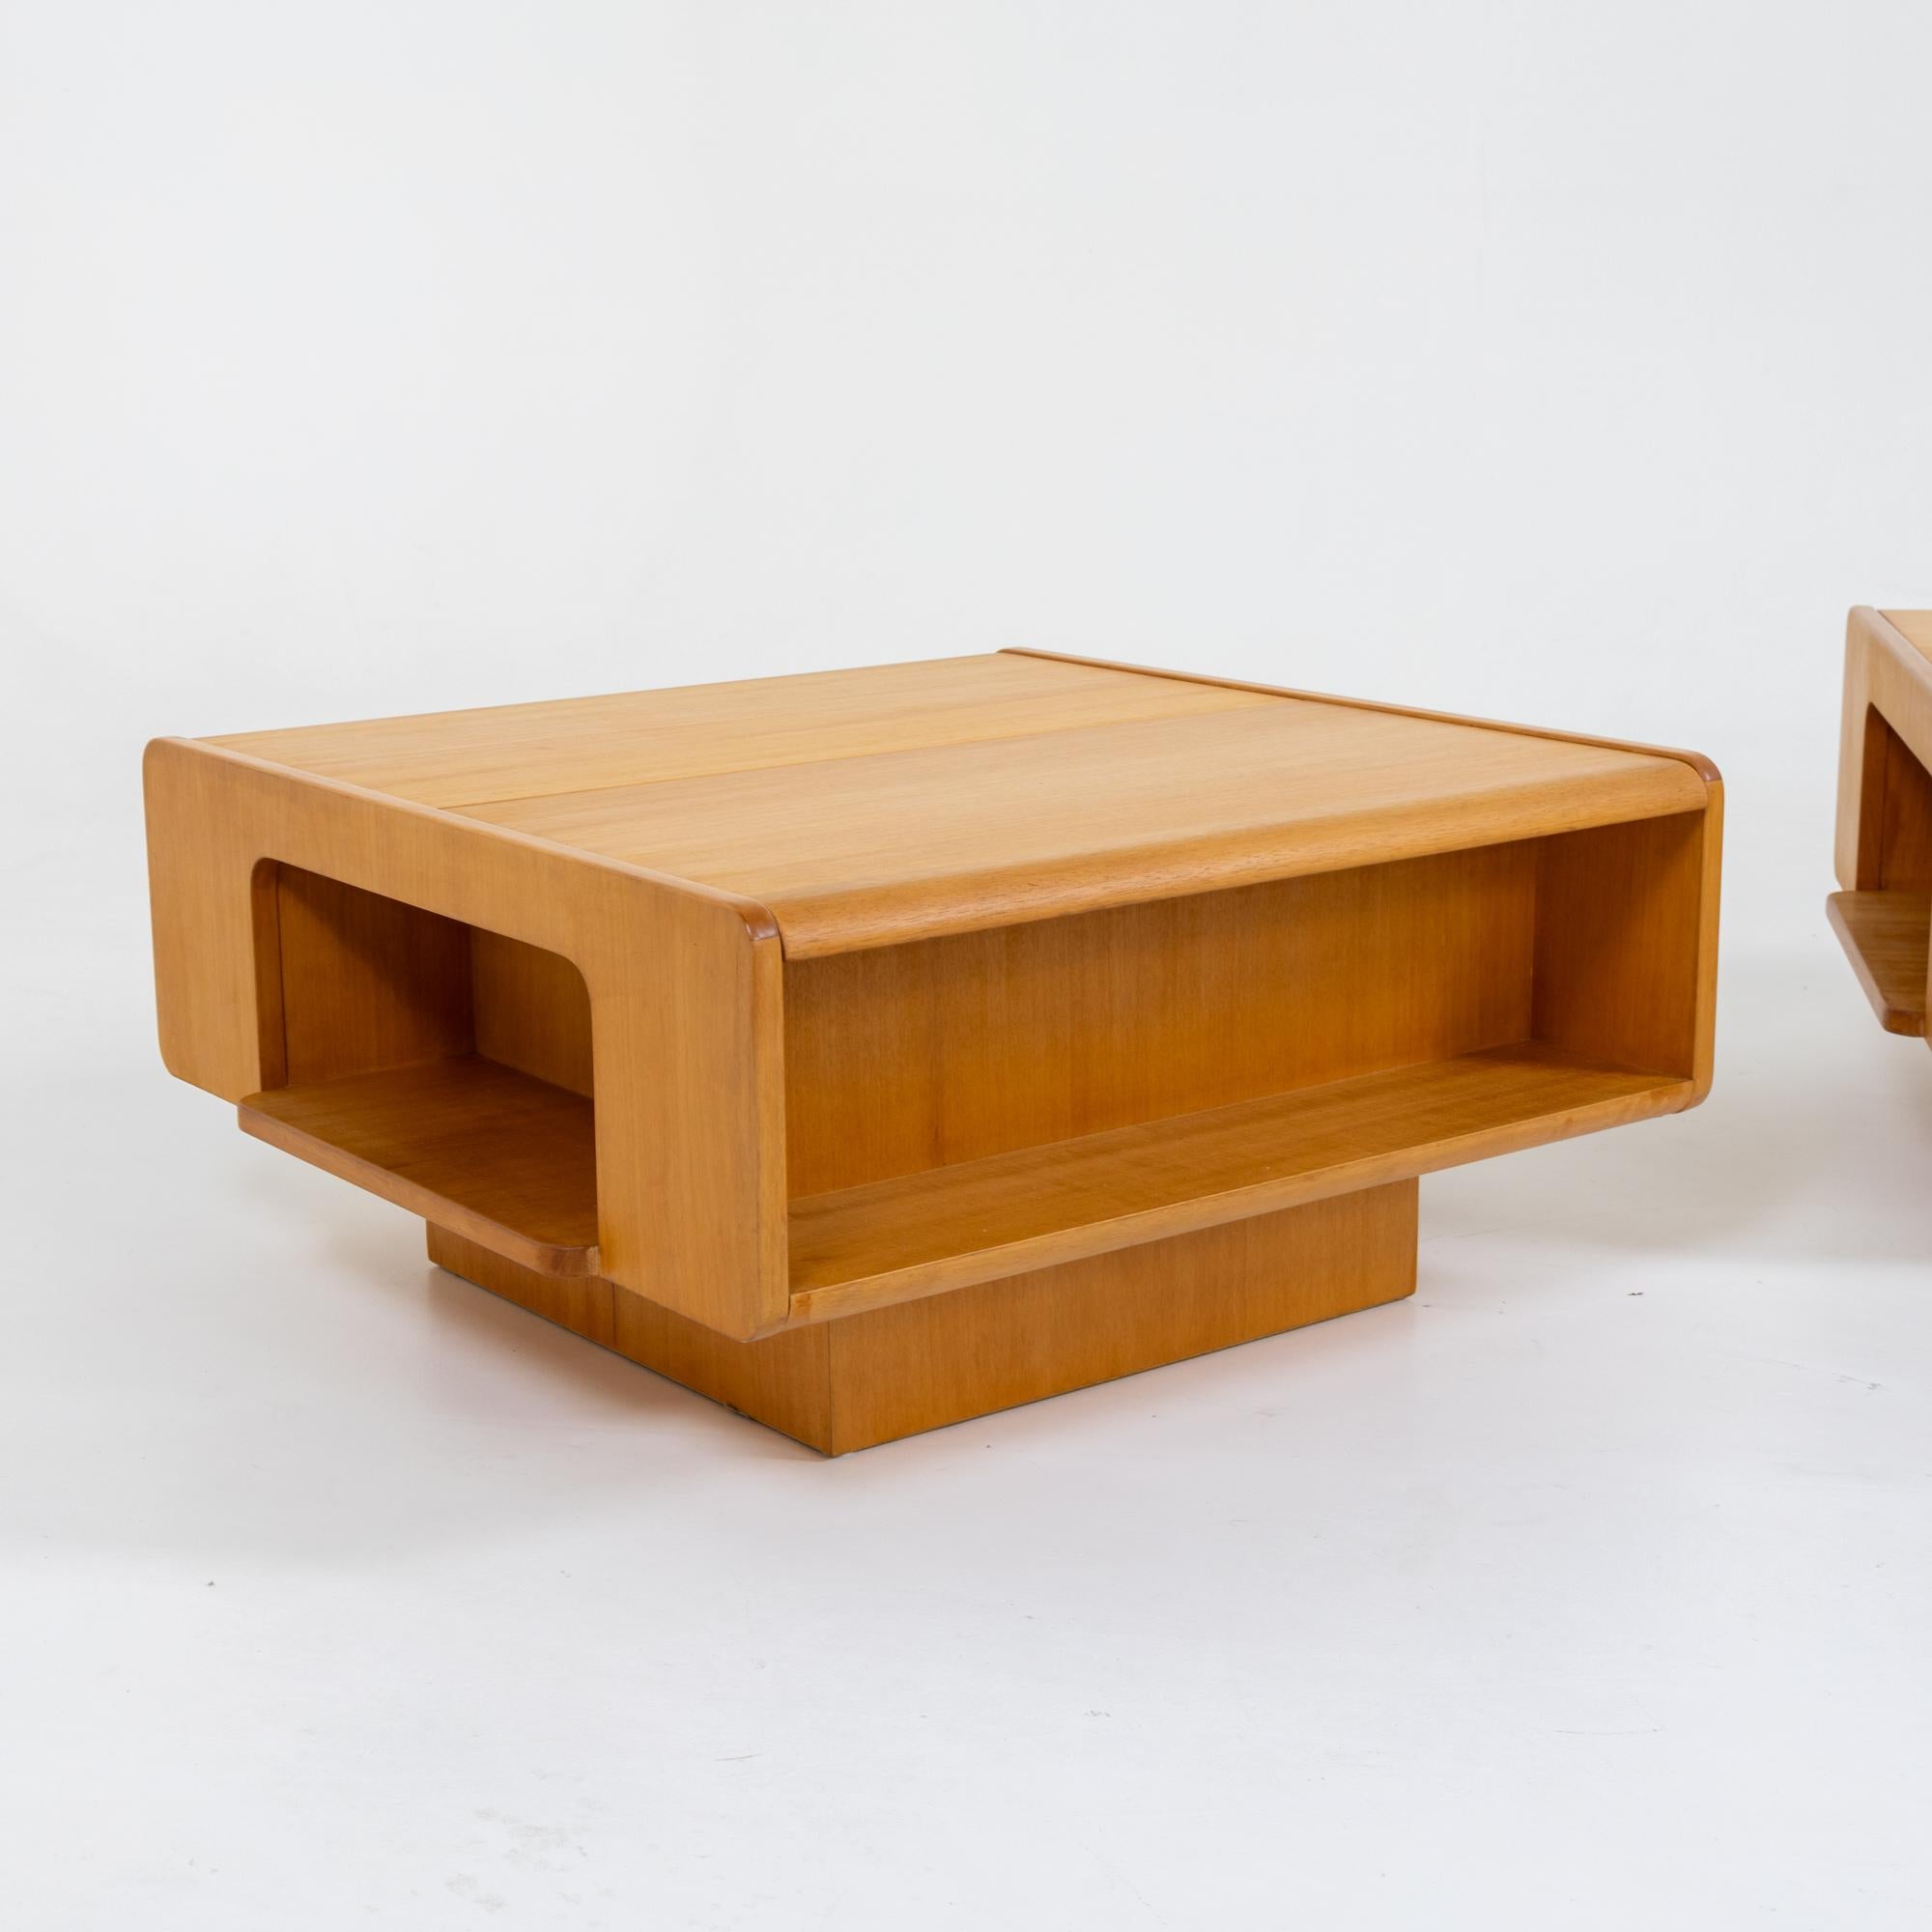 Ein Paar Couchtische aus Holz mit verschiebbarer Tischplatte und Stauraum im Inneren. Die rechteckigen Korpusse sind an den Seiten mit zusätzlichem Stauraum versehen und bieten von allen Seiten einen interessanten Anblick.